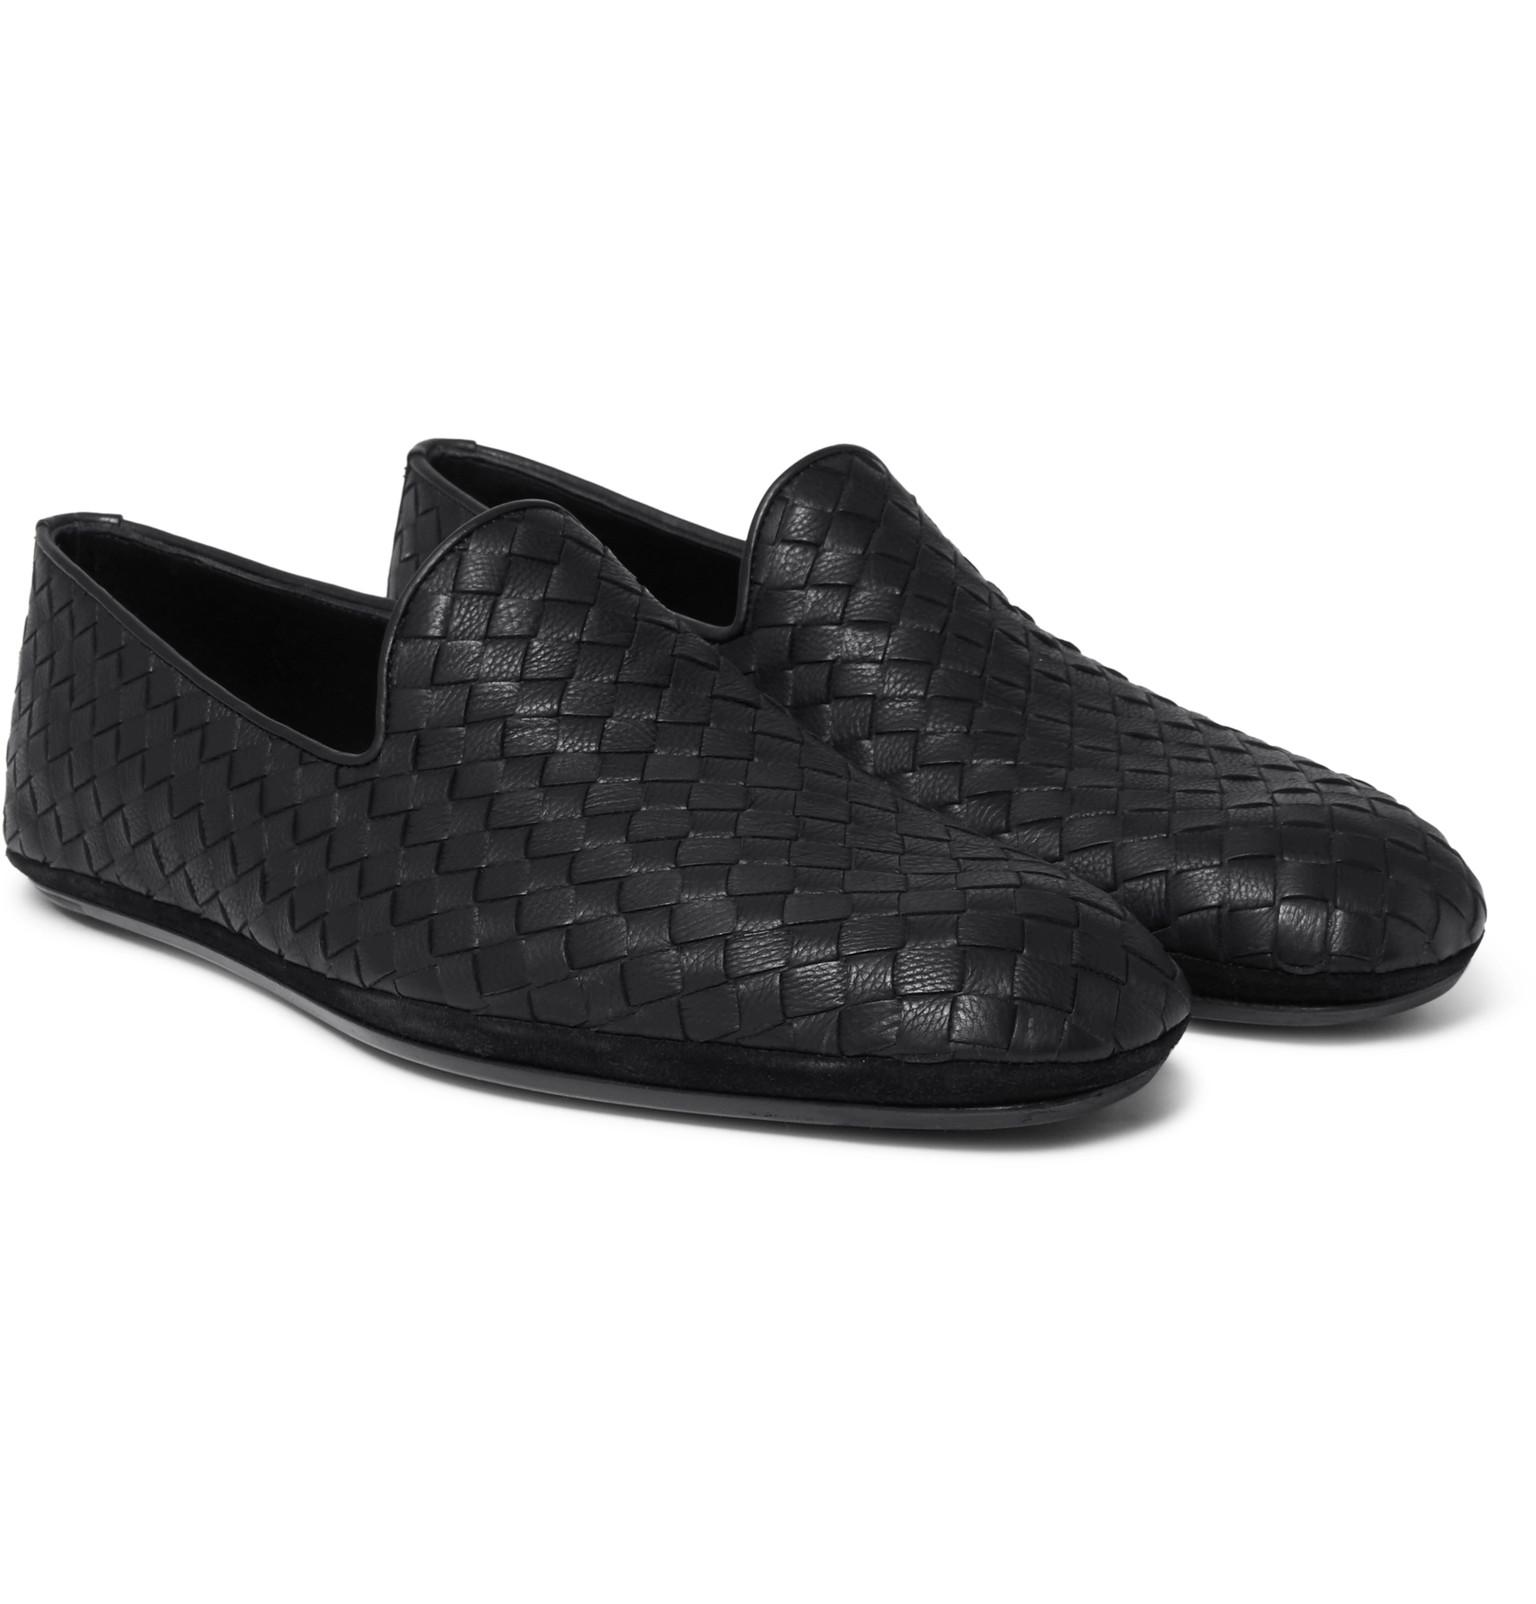 Lyst - Bottega Veneta Intrecciato Leather Slippers in Black for Men